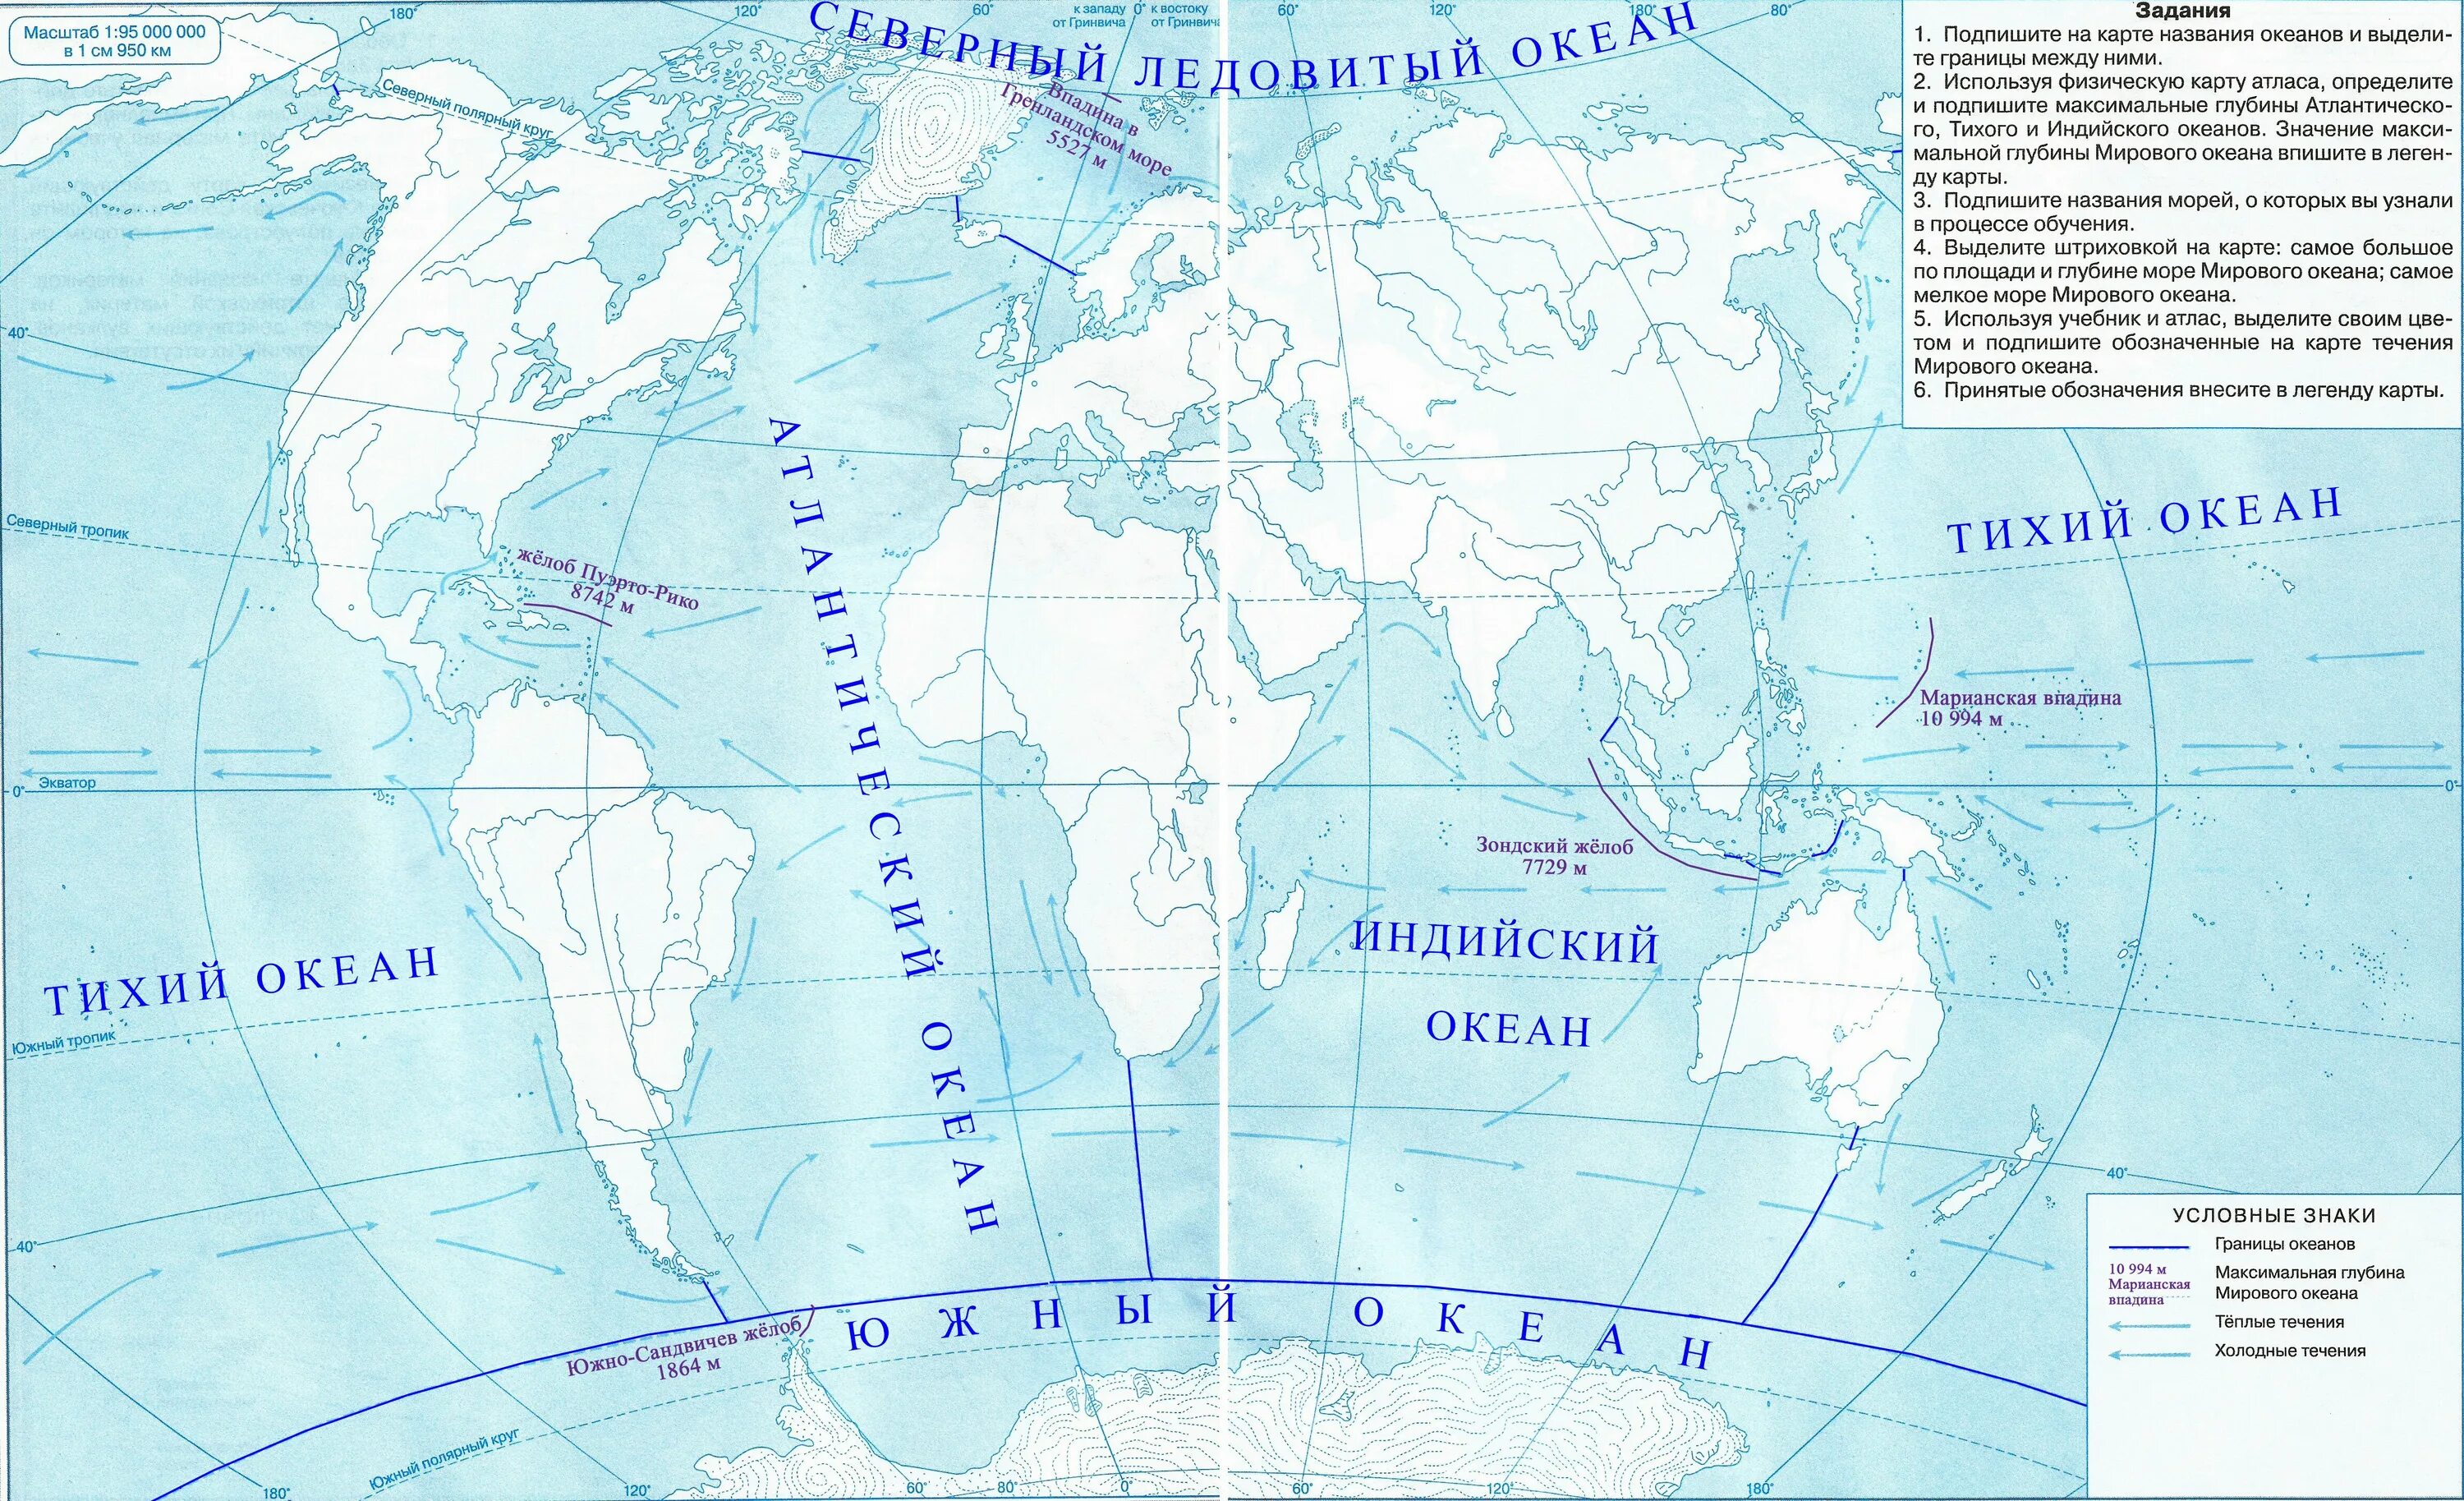 Конт карты 6 класс. Контурная карта Тихого океана. Контурная карта по географии 5 класс карта мирового океана. Максимальная глубина мирового океана на контурной карте. Мировой океан течения в океане атлас 6 класс.